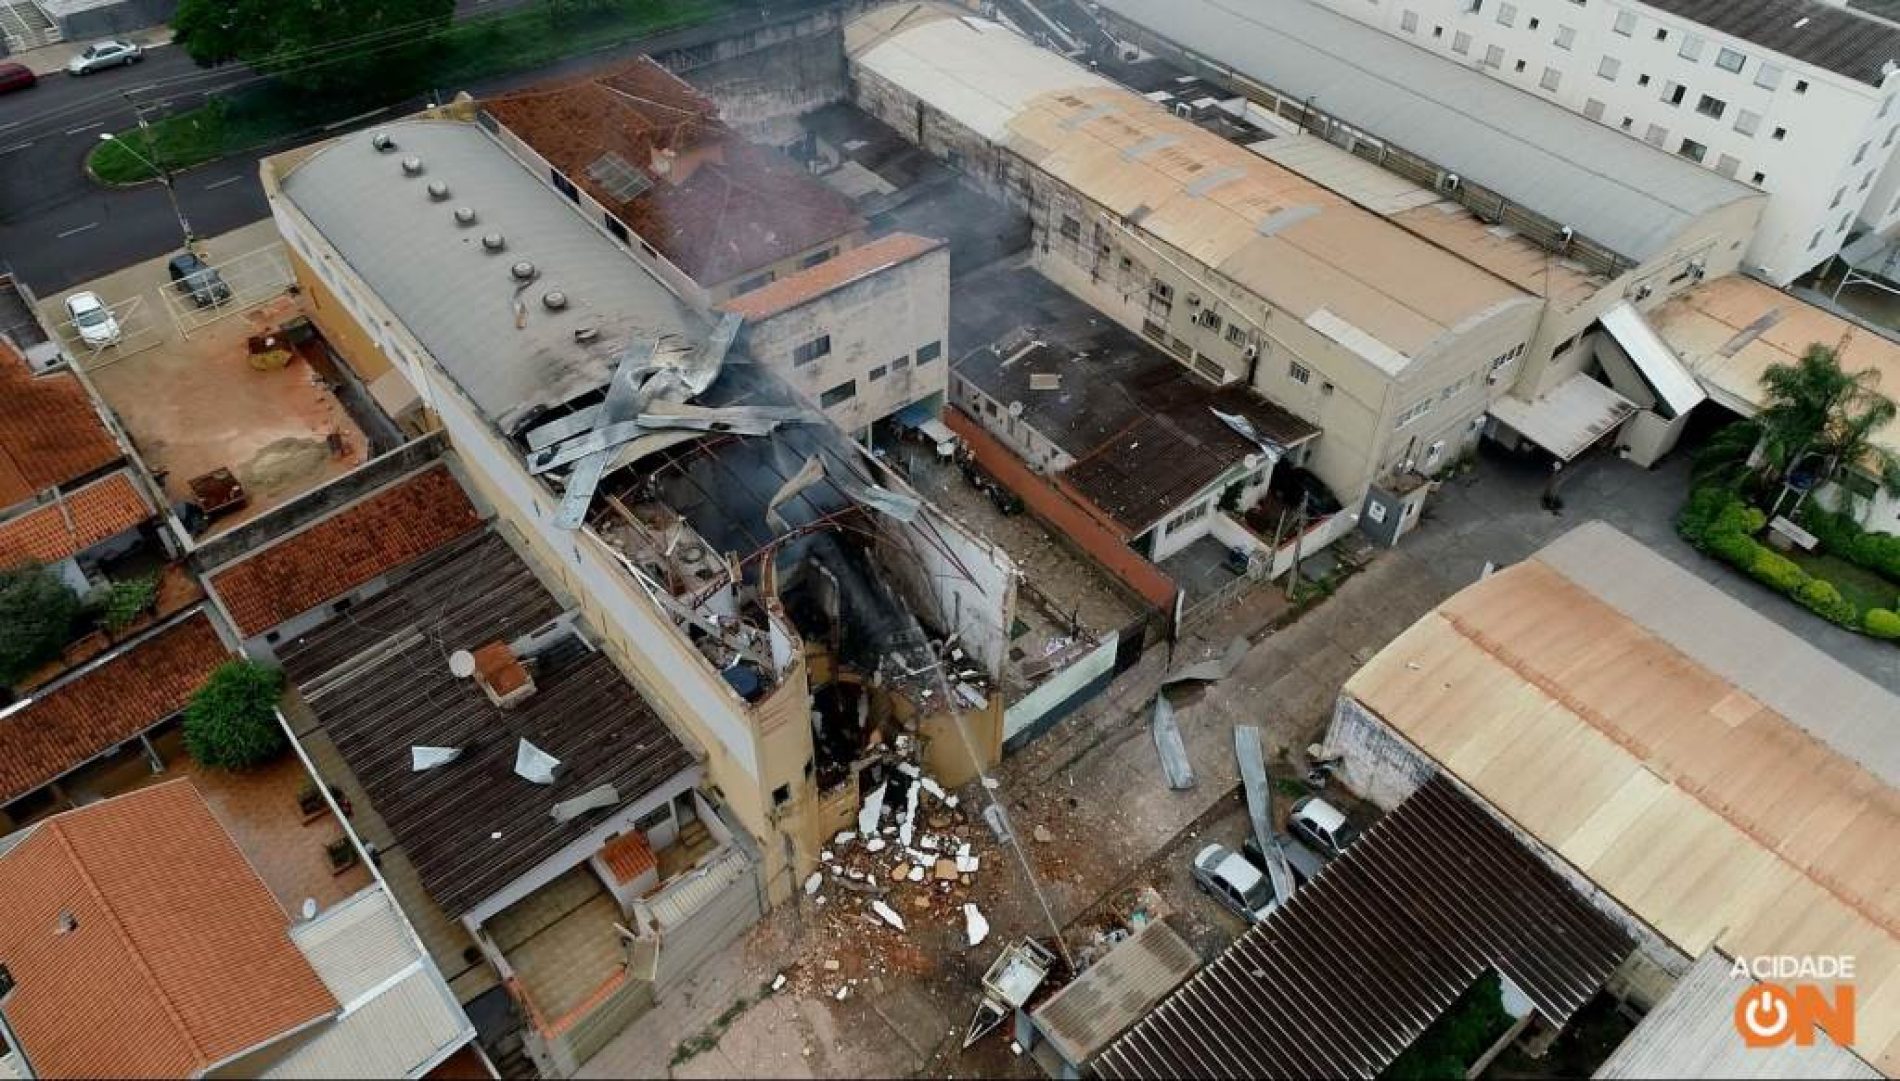 INCÊNDIO/REGIÃO: Bombeiros isolam prédio, mas descartam risco de nova explosão